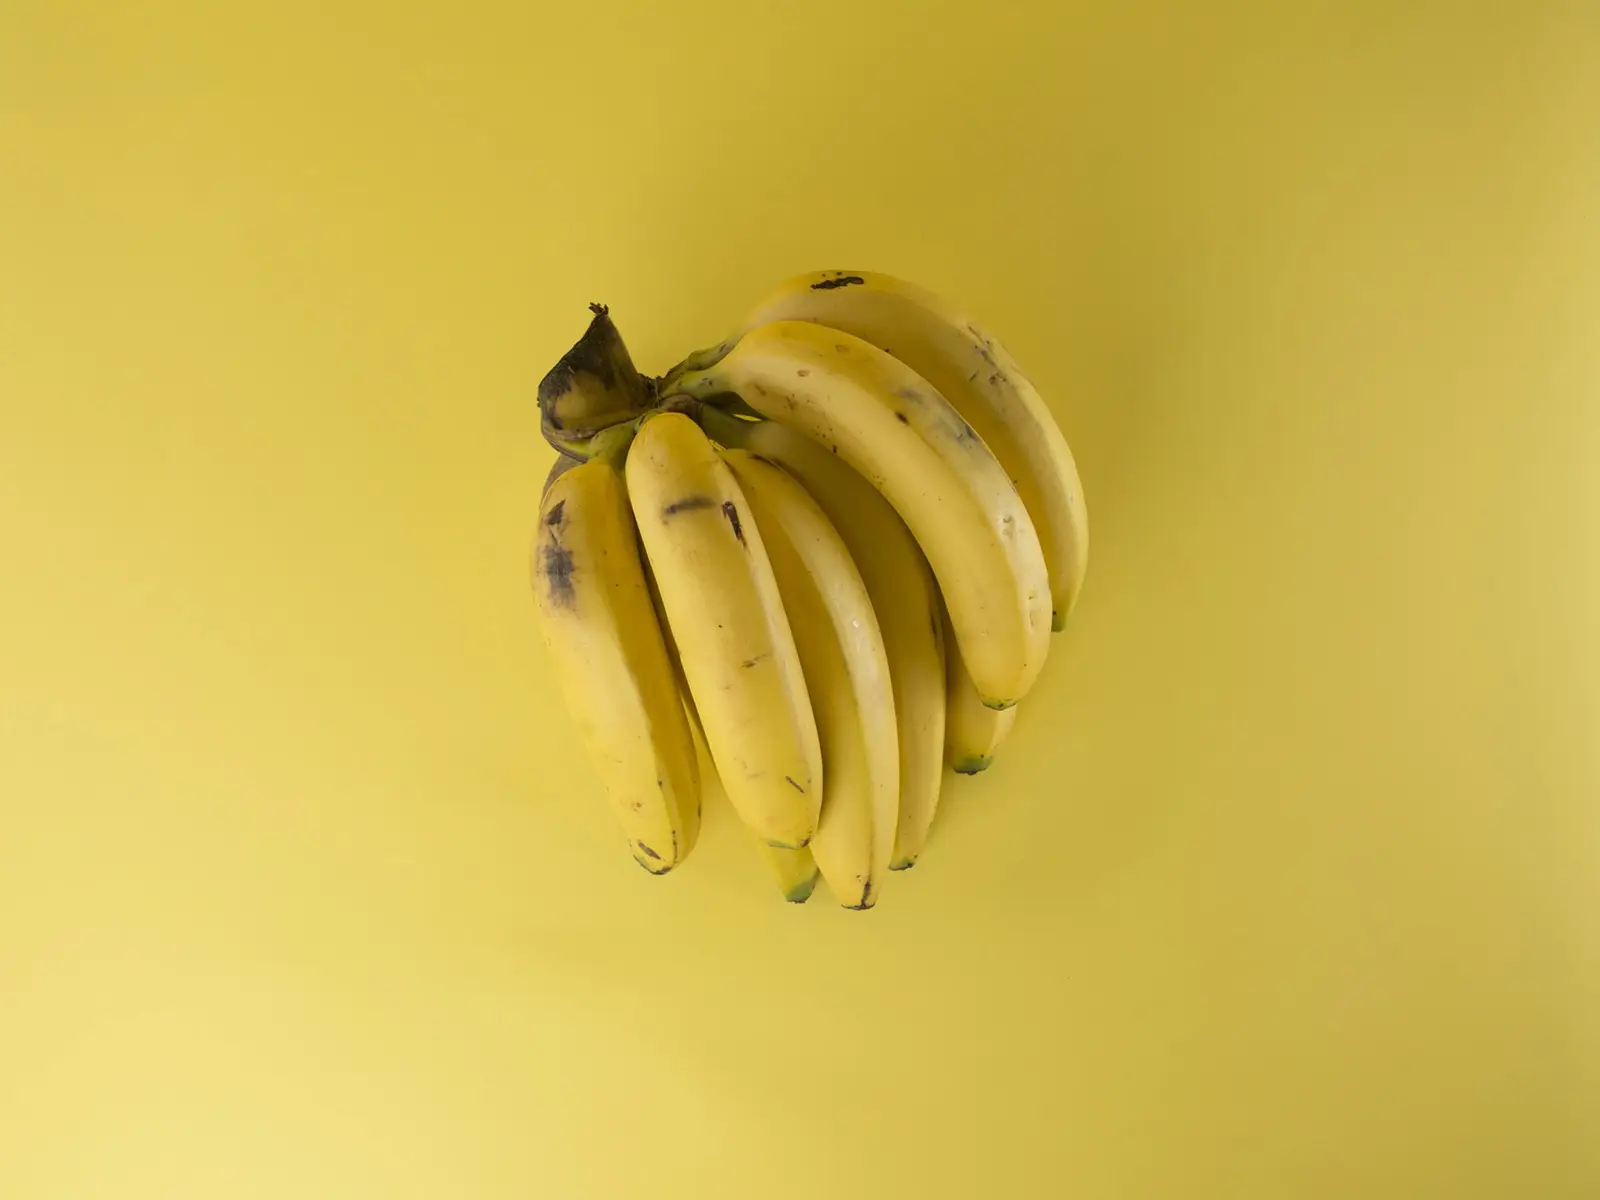 Ecco come si misura la radioattività in banane